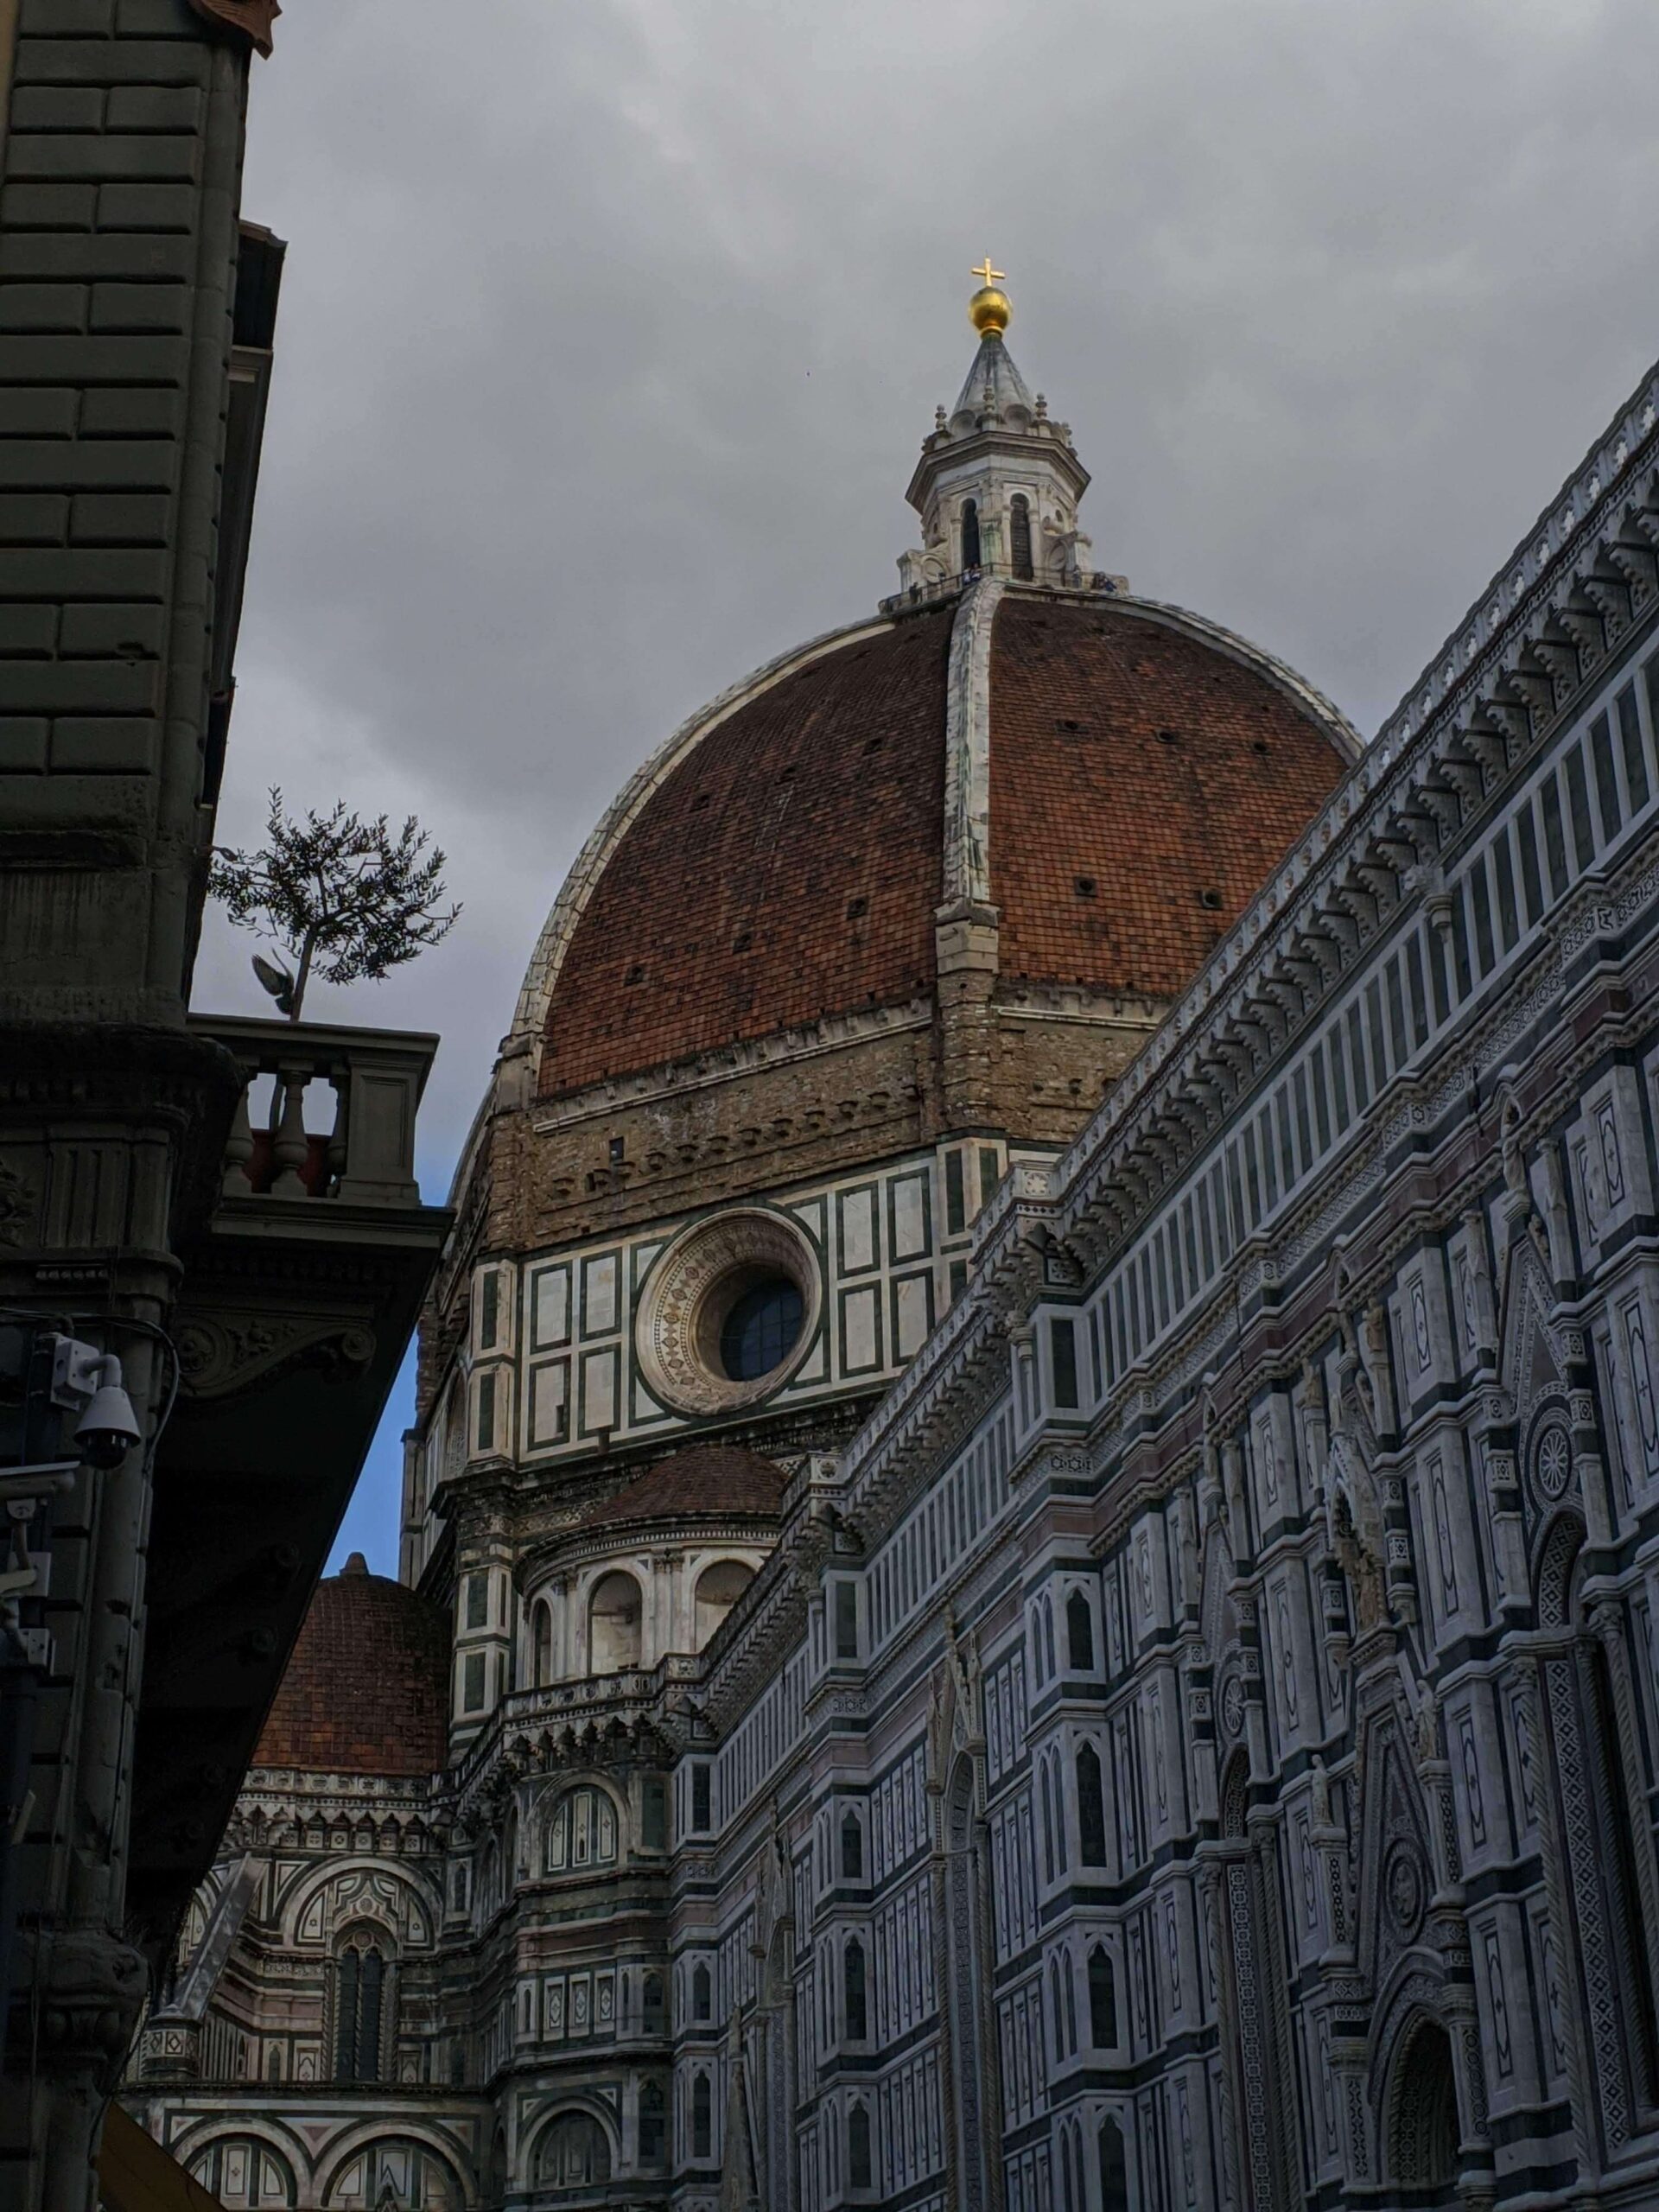 Visão da cúpula do Duomo de Florença entre edifícios históricos, sob um céu encoberto, destacando a harmonia entre a grandiosidade do Duomo e a escala urbana de Florença.